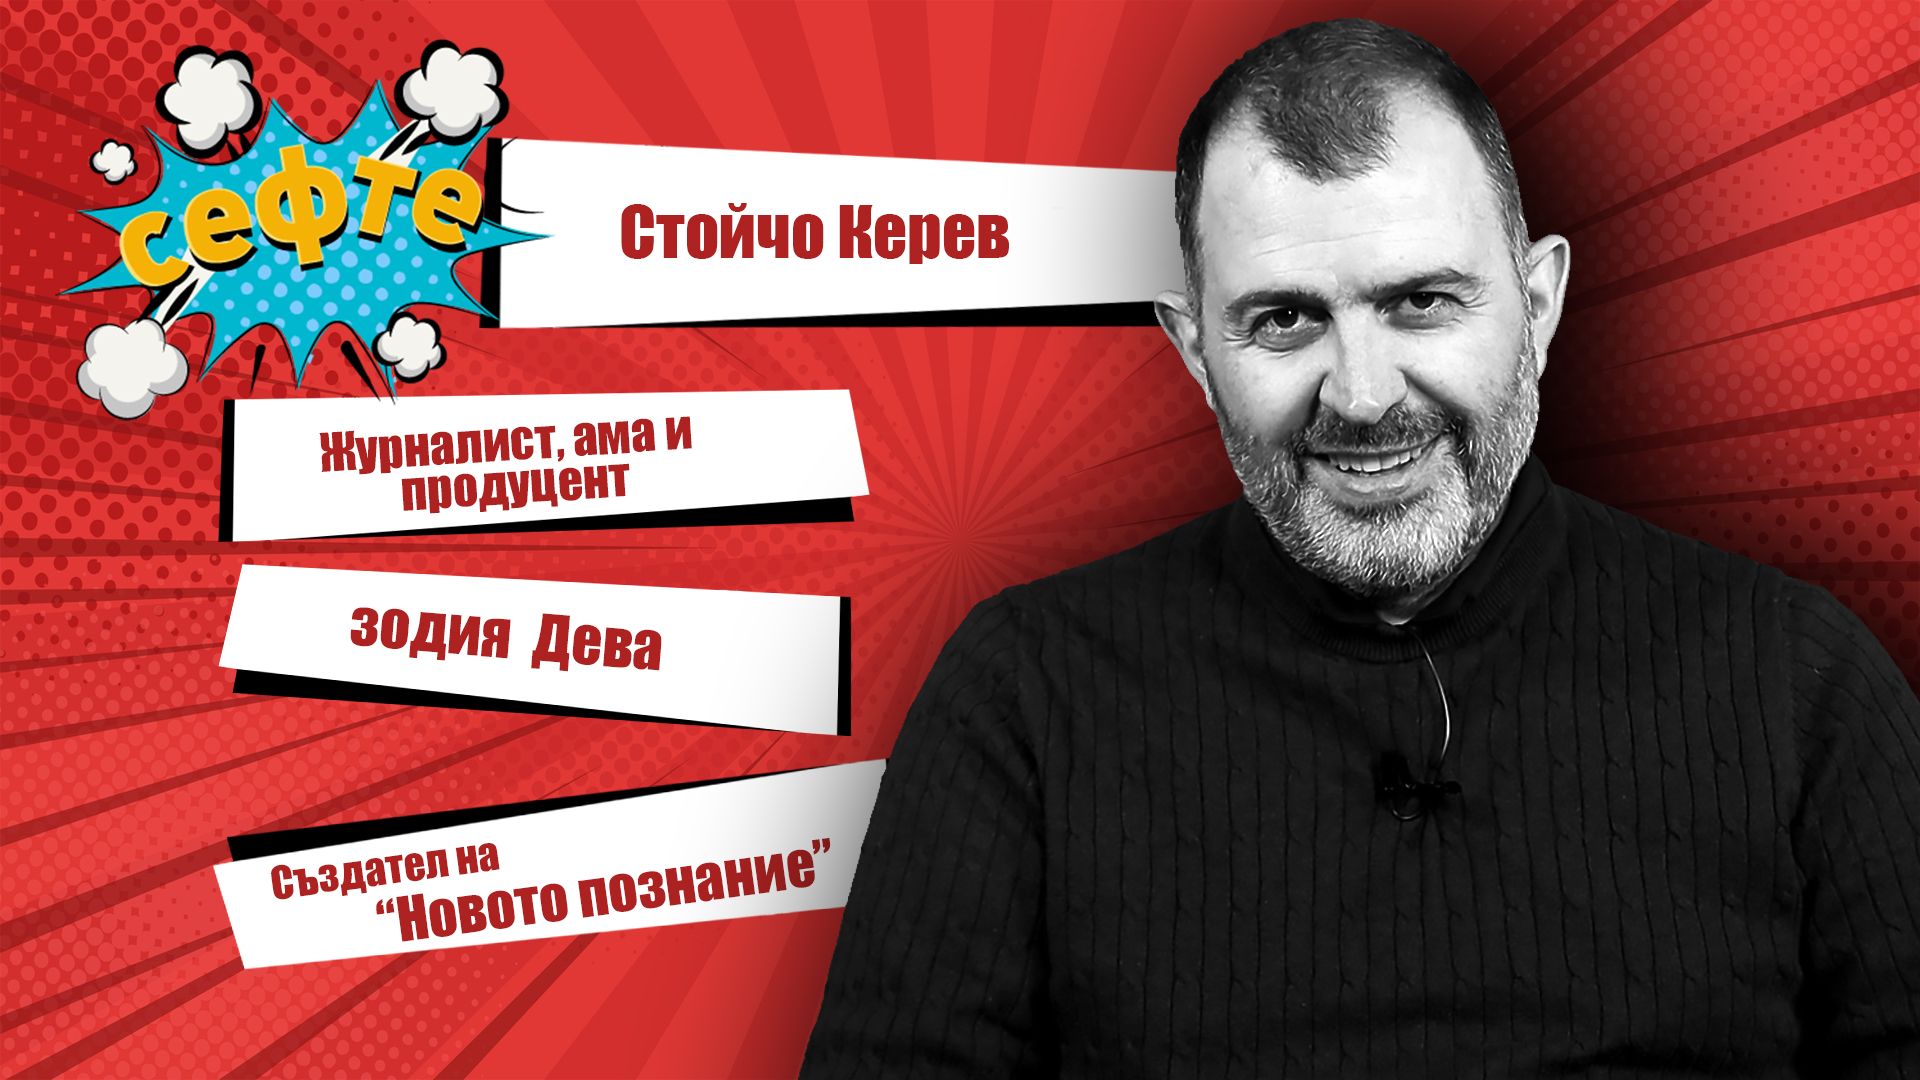 Човекът на Новото познание: Стойчо Керев в #Сефте